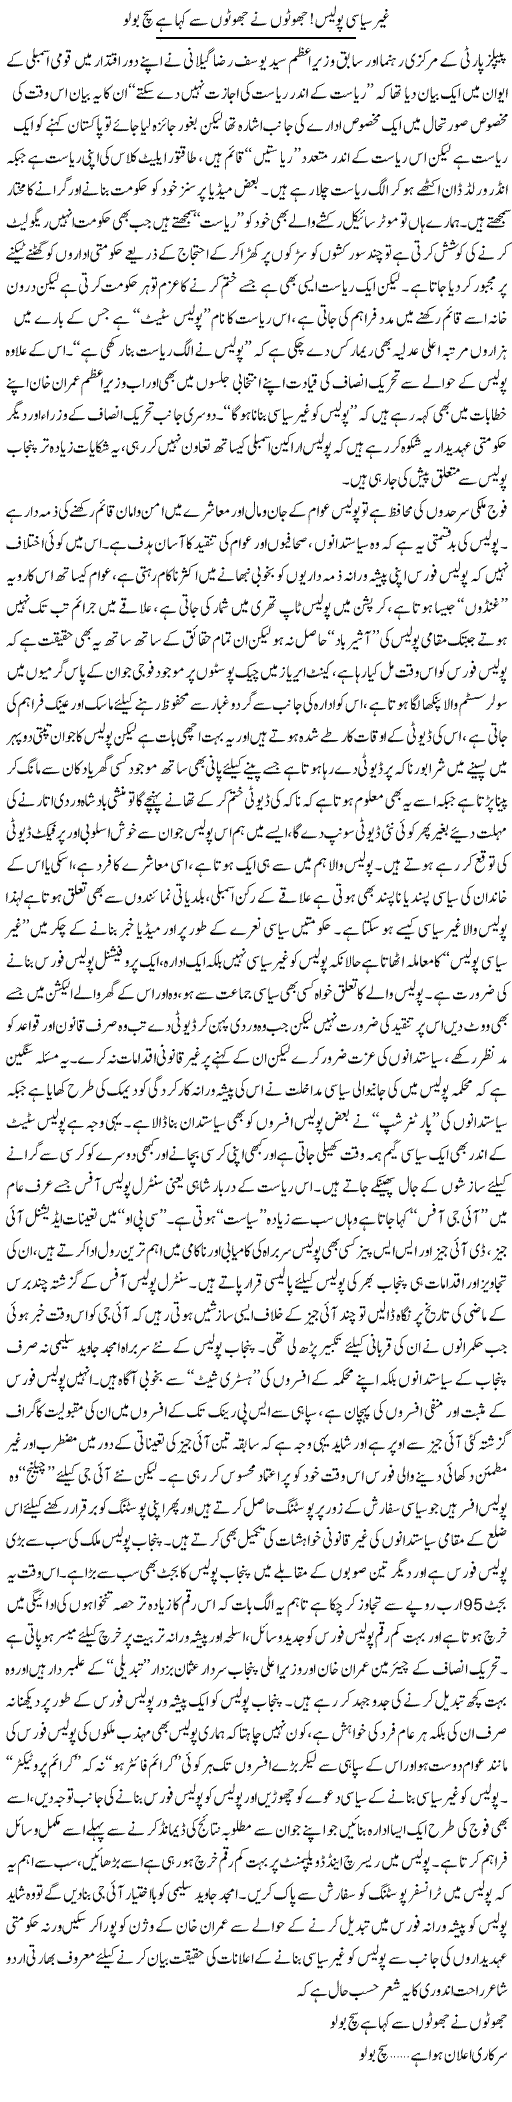 Ghair Siyasi Police, Jhooton Ne Jhooton Se Kaha Hai Sach Bolo | Rizwan Asif | Daily Urdu Columns